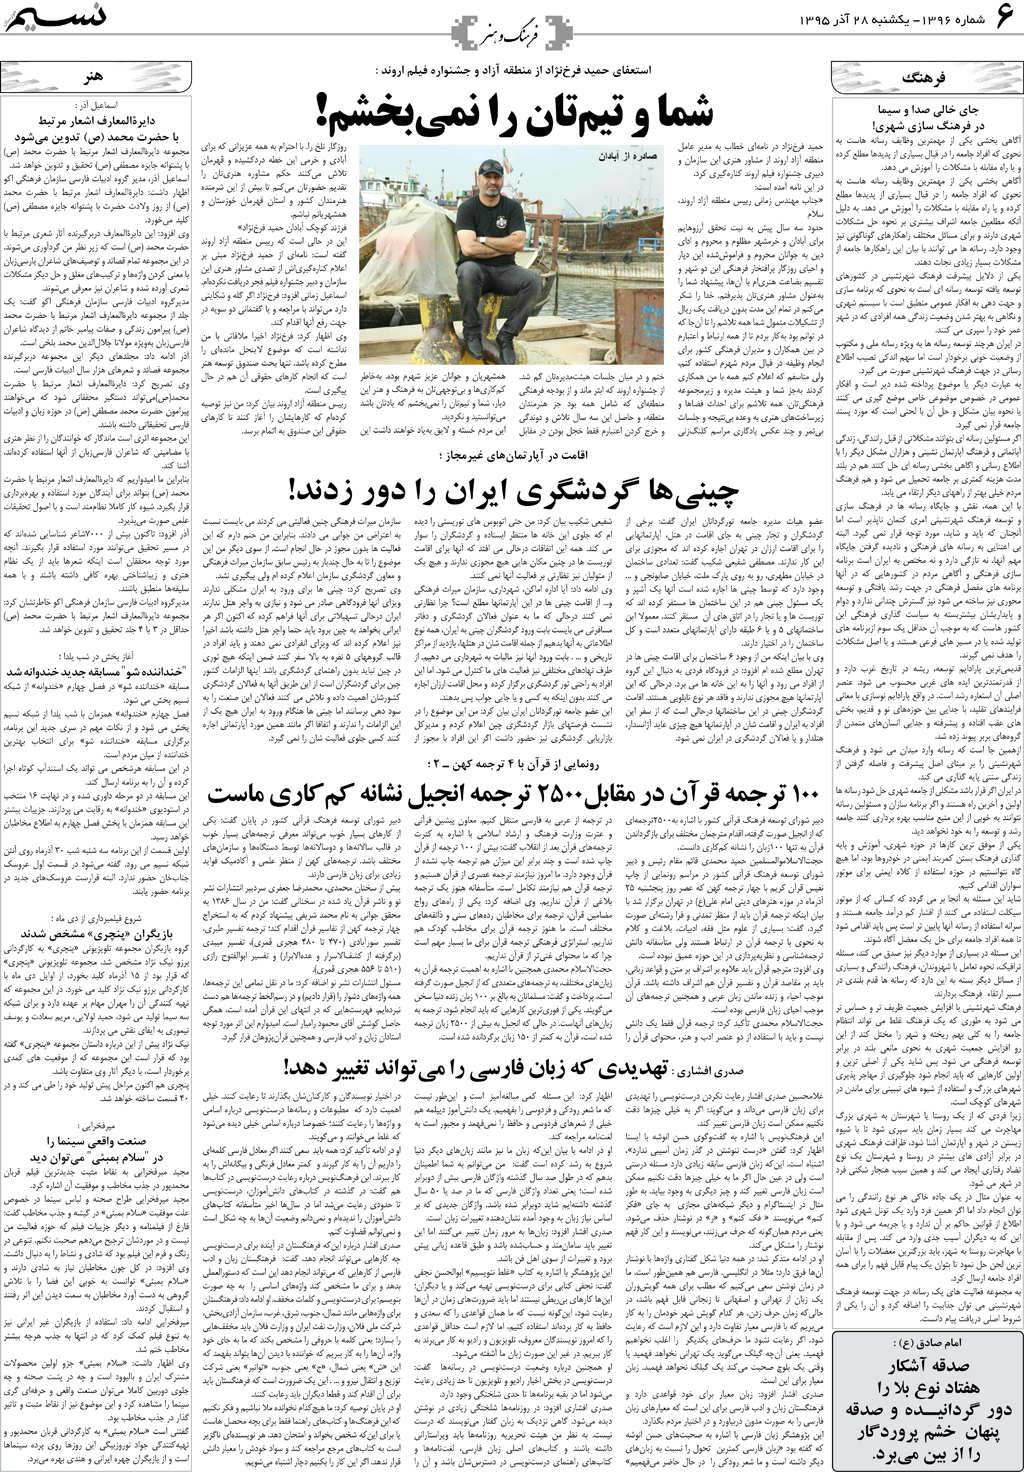 صفحه فرهنگ و هنر روزنامه نسیم شماره 1396